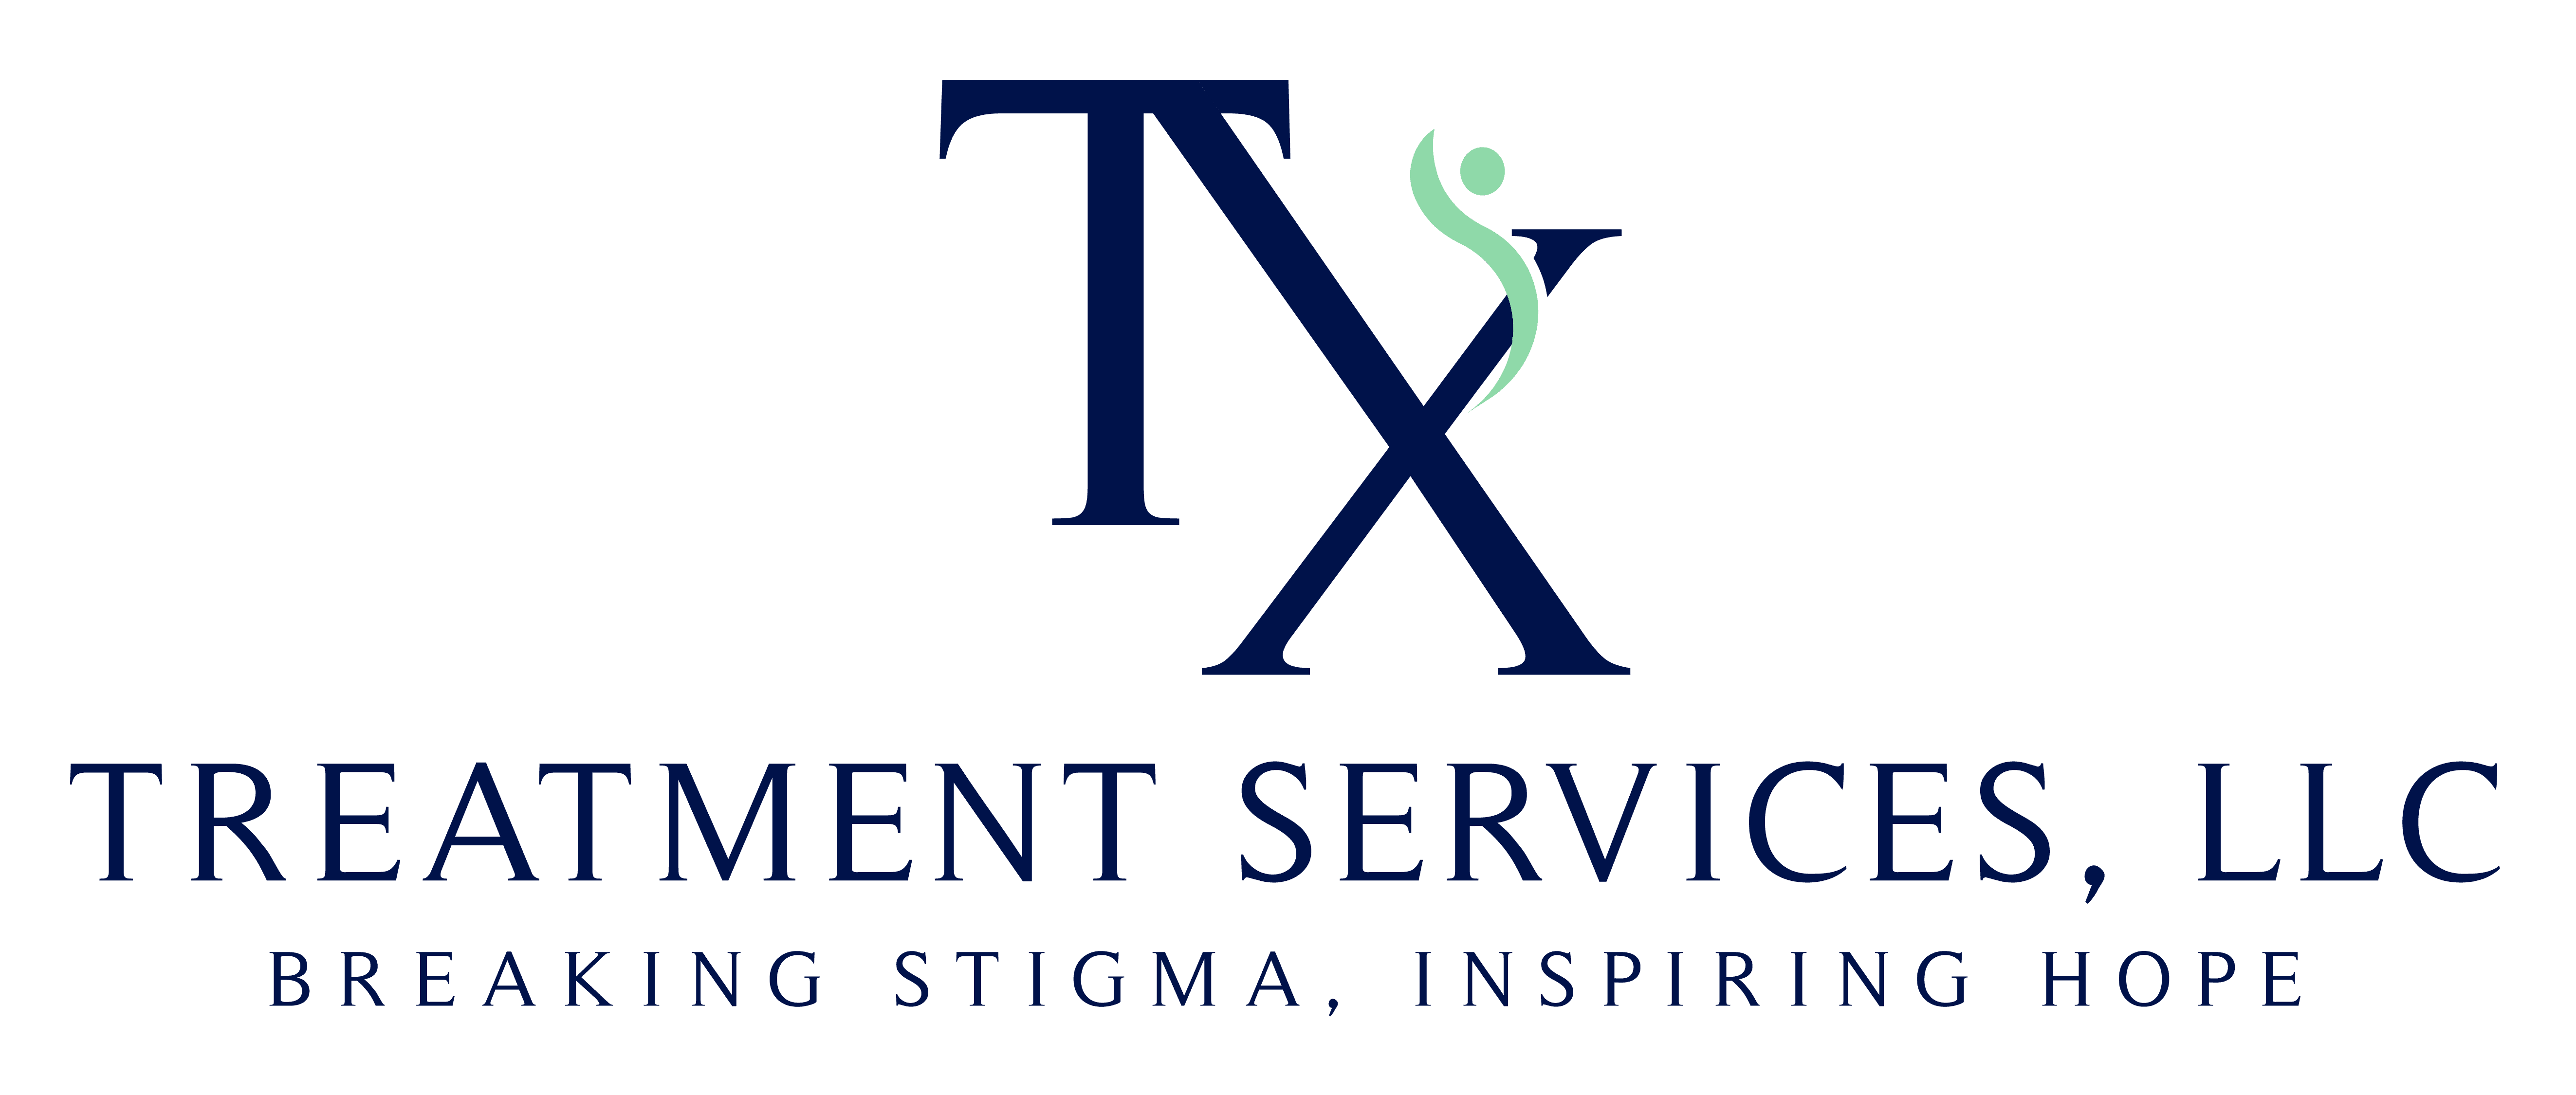 Texas Treatment Services, LLC